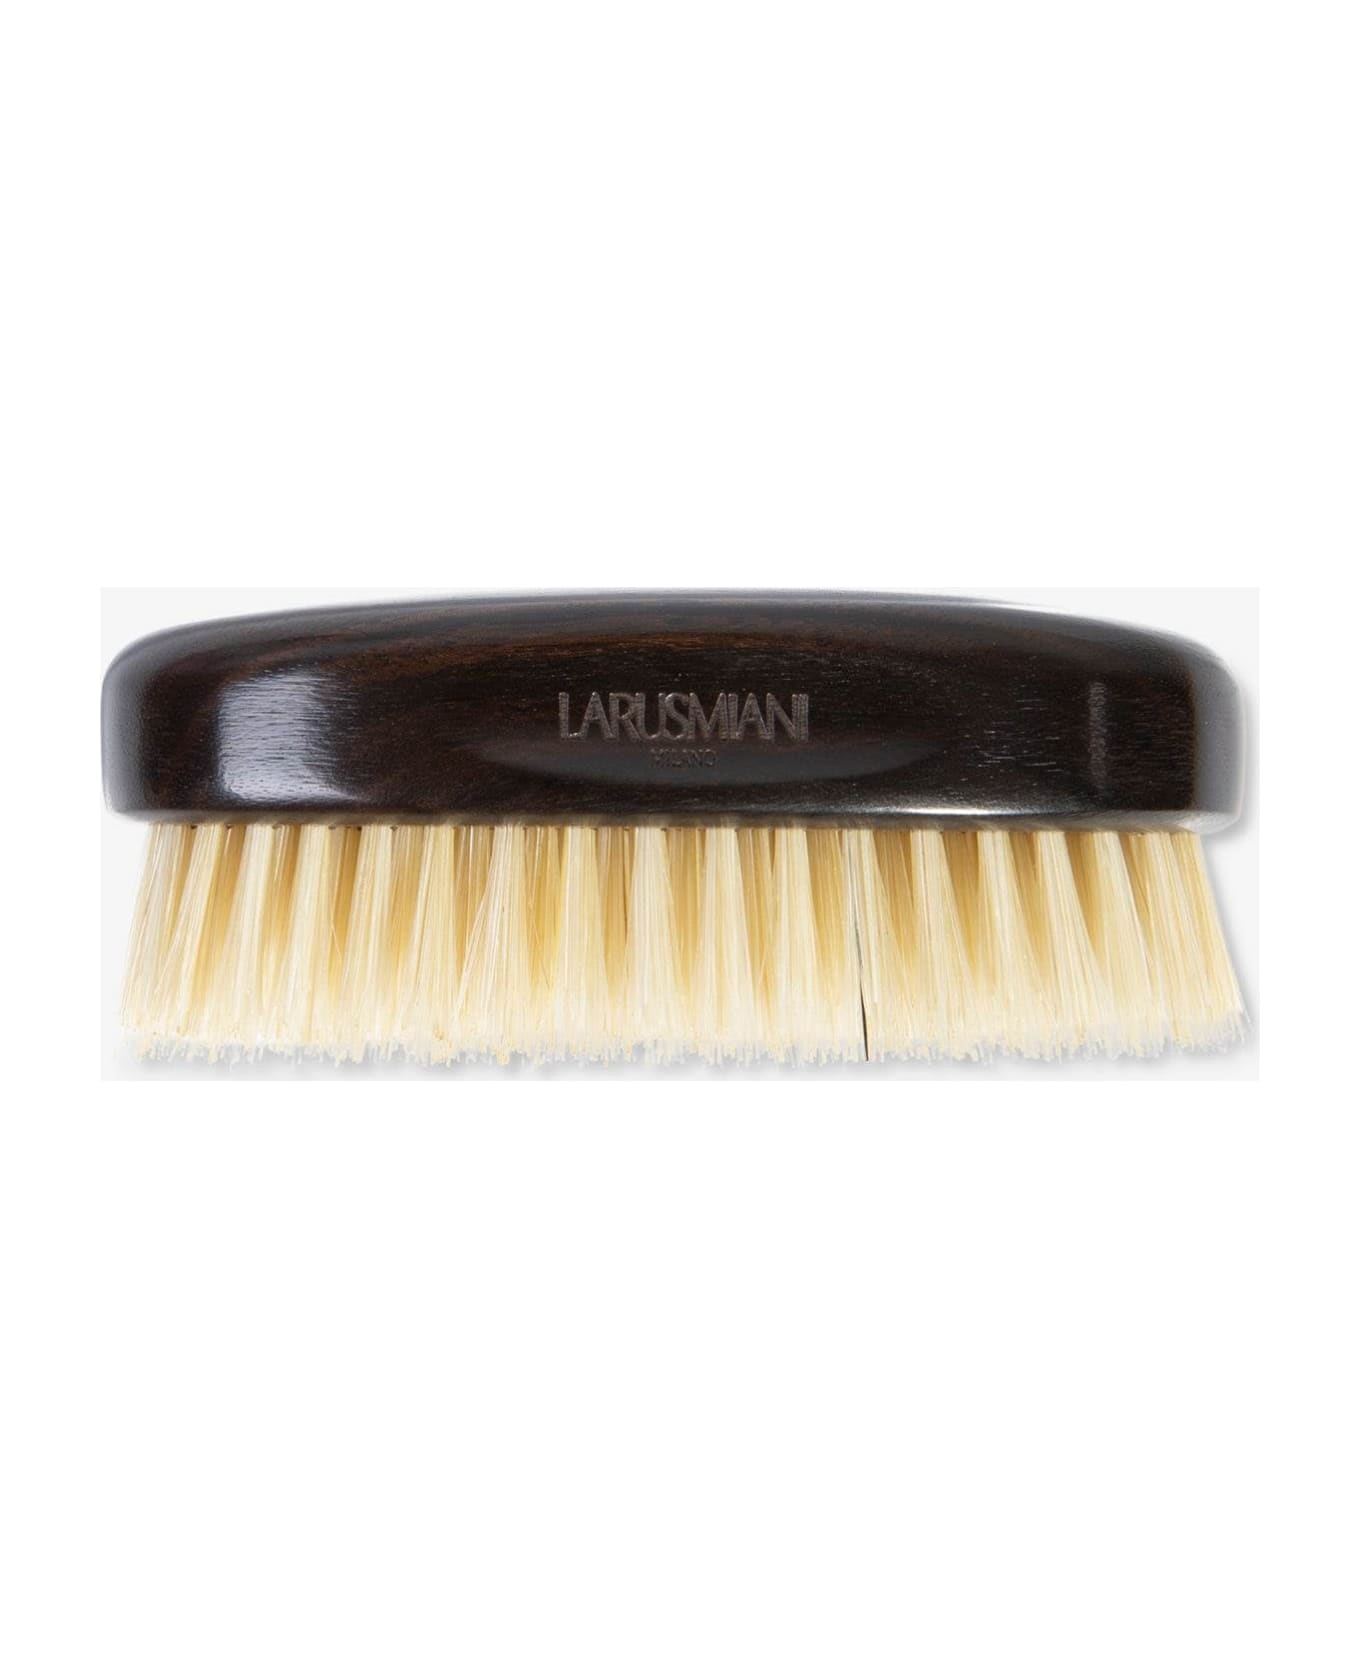 Larusmiani Travel Hair Brush 'batiste' Beauty - White